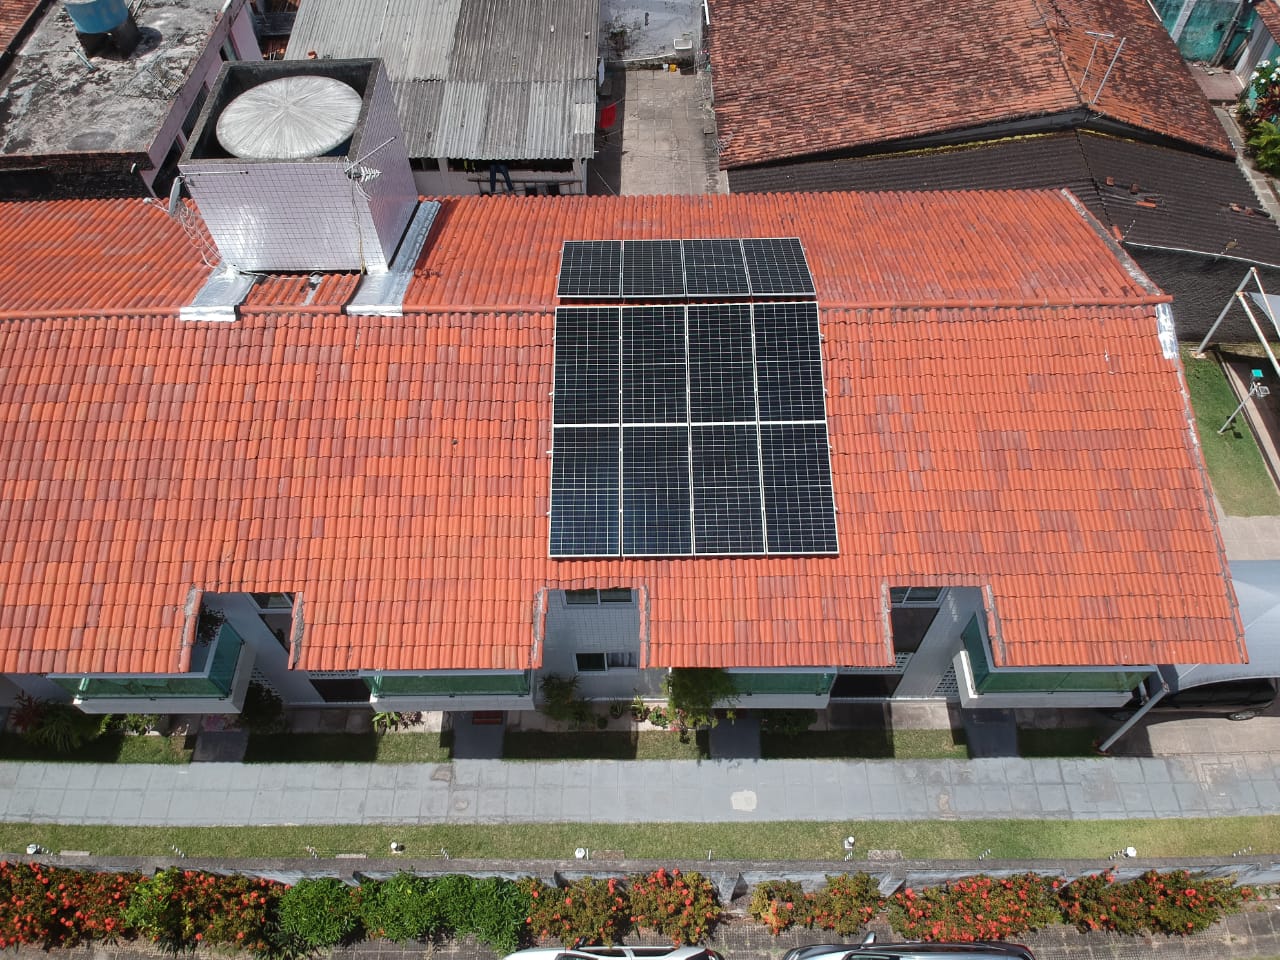 Sistema instalado no bairro Várzea, Recife-PE. Composto por 12 módulos Solar Fotovoltaico de potência 425W e 03 Micro inversor APSystems-QS1. Com plataforma para monitoramento Online nível módulo a módulo.